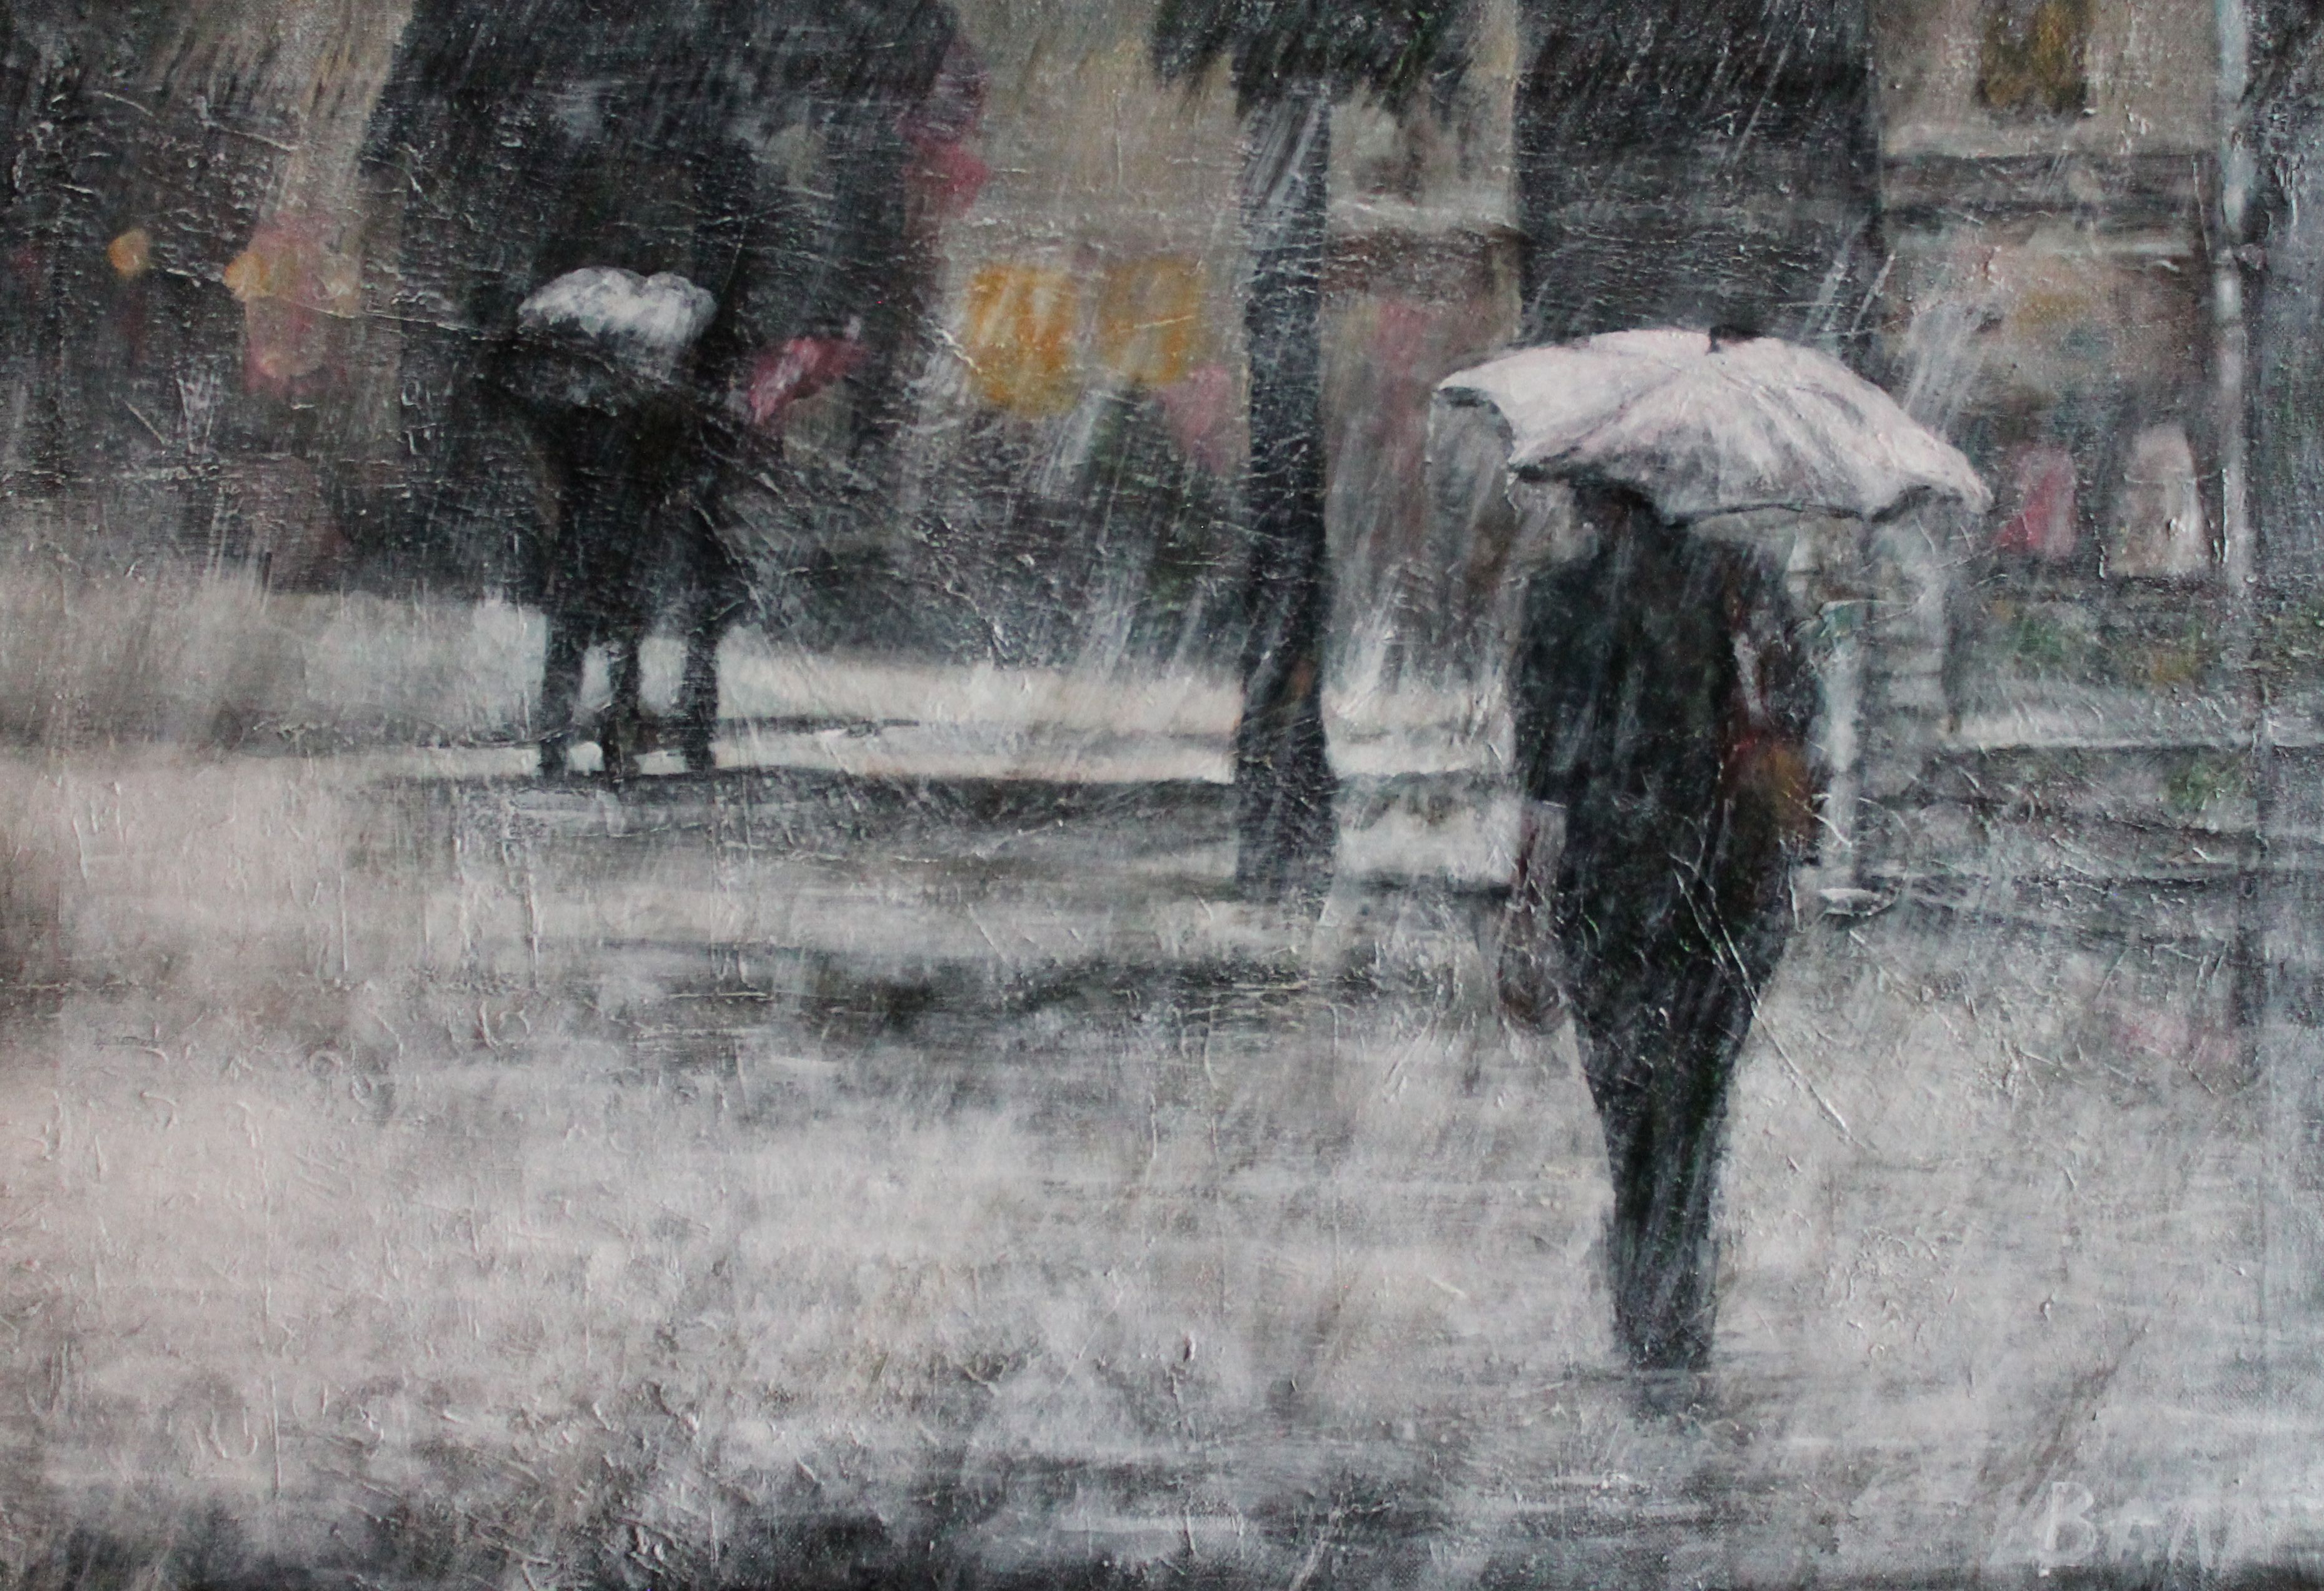 Купить авторскаую картину Сильный дождь летом, художник Валентин  Андреевич Зеньковский, доставка по всей России, телефон +7 903 132 70 72